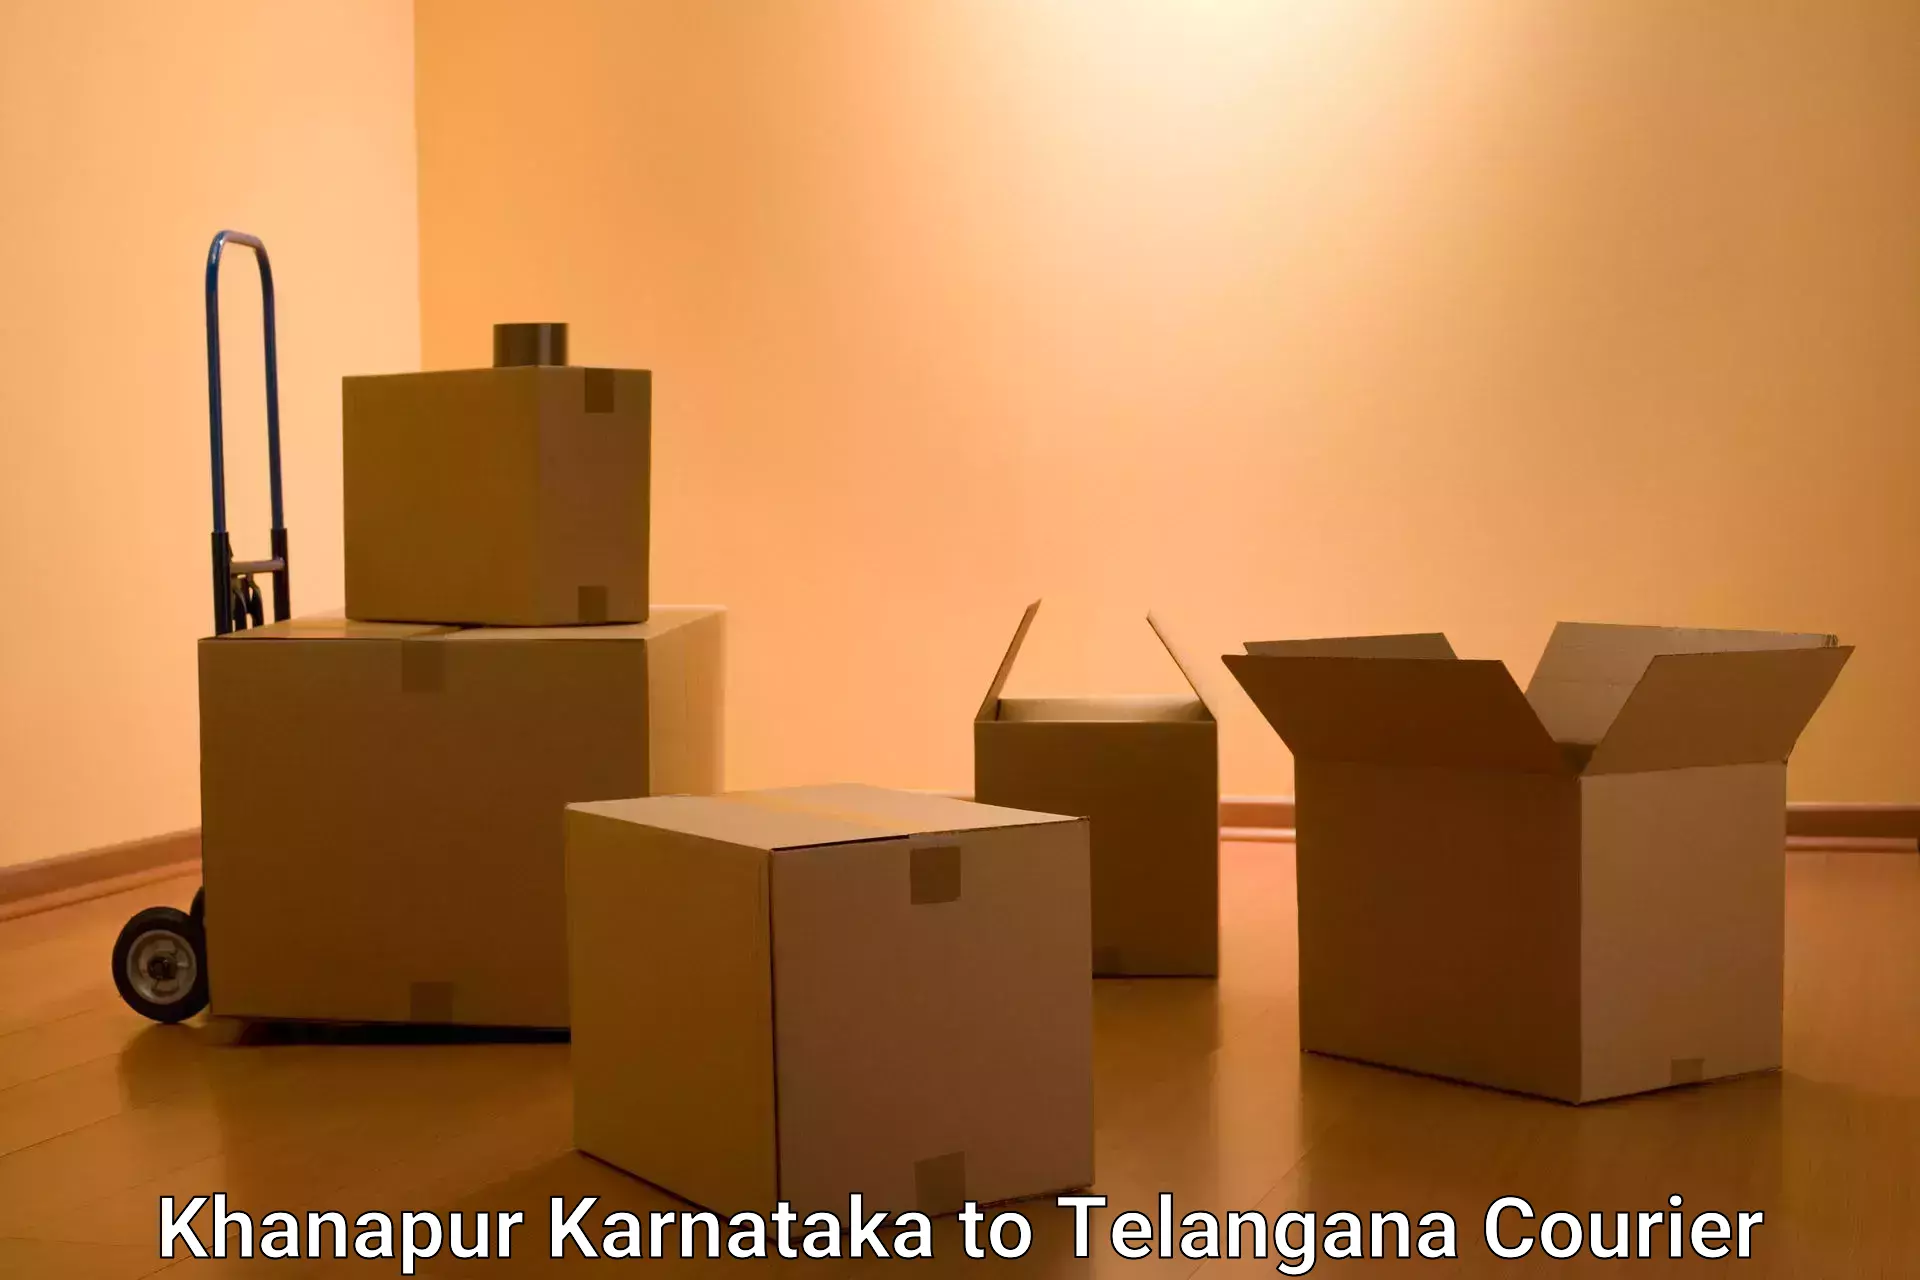 Next-day freight services Khanapur Karnataka to Karimnagar